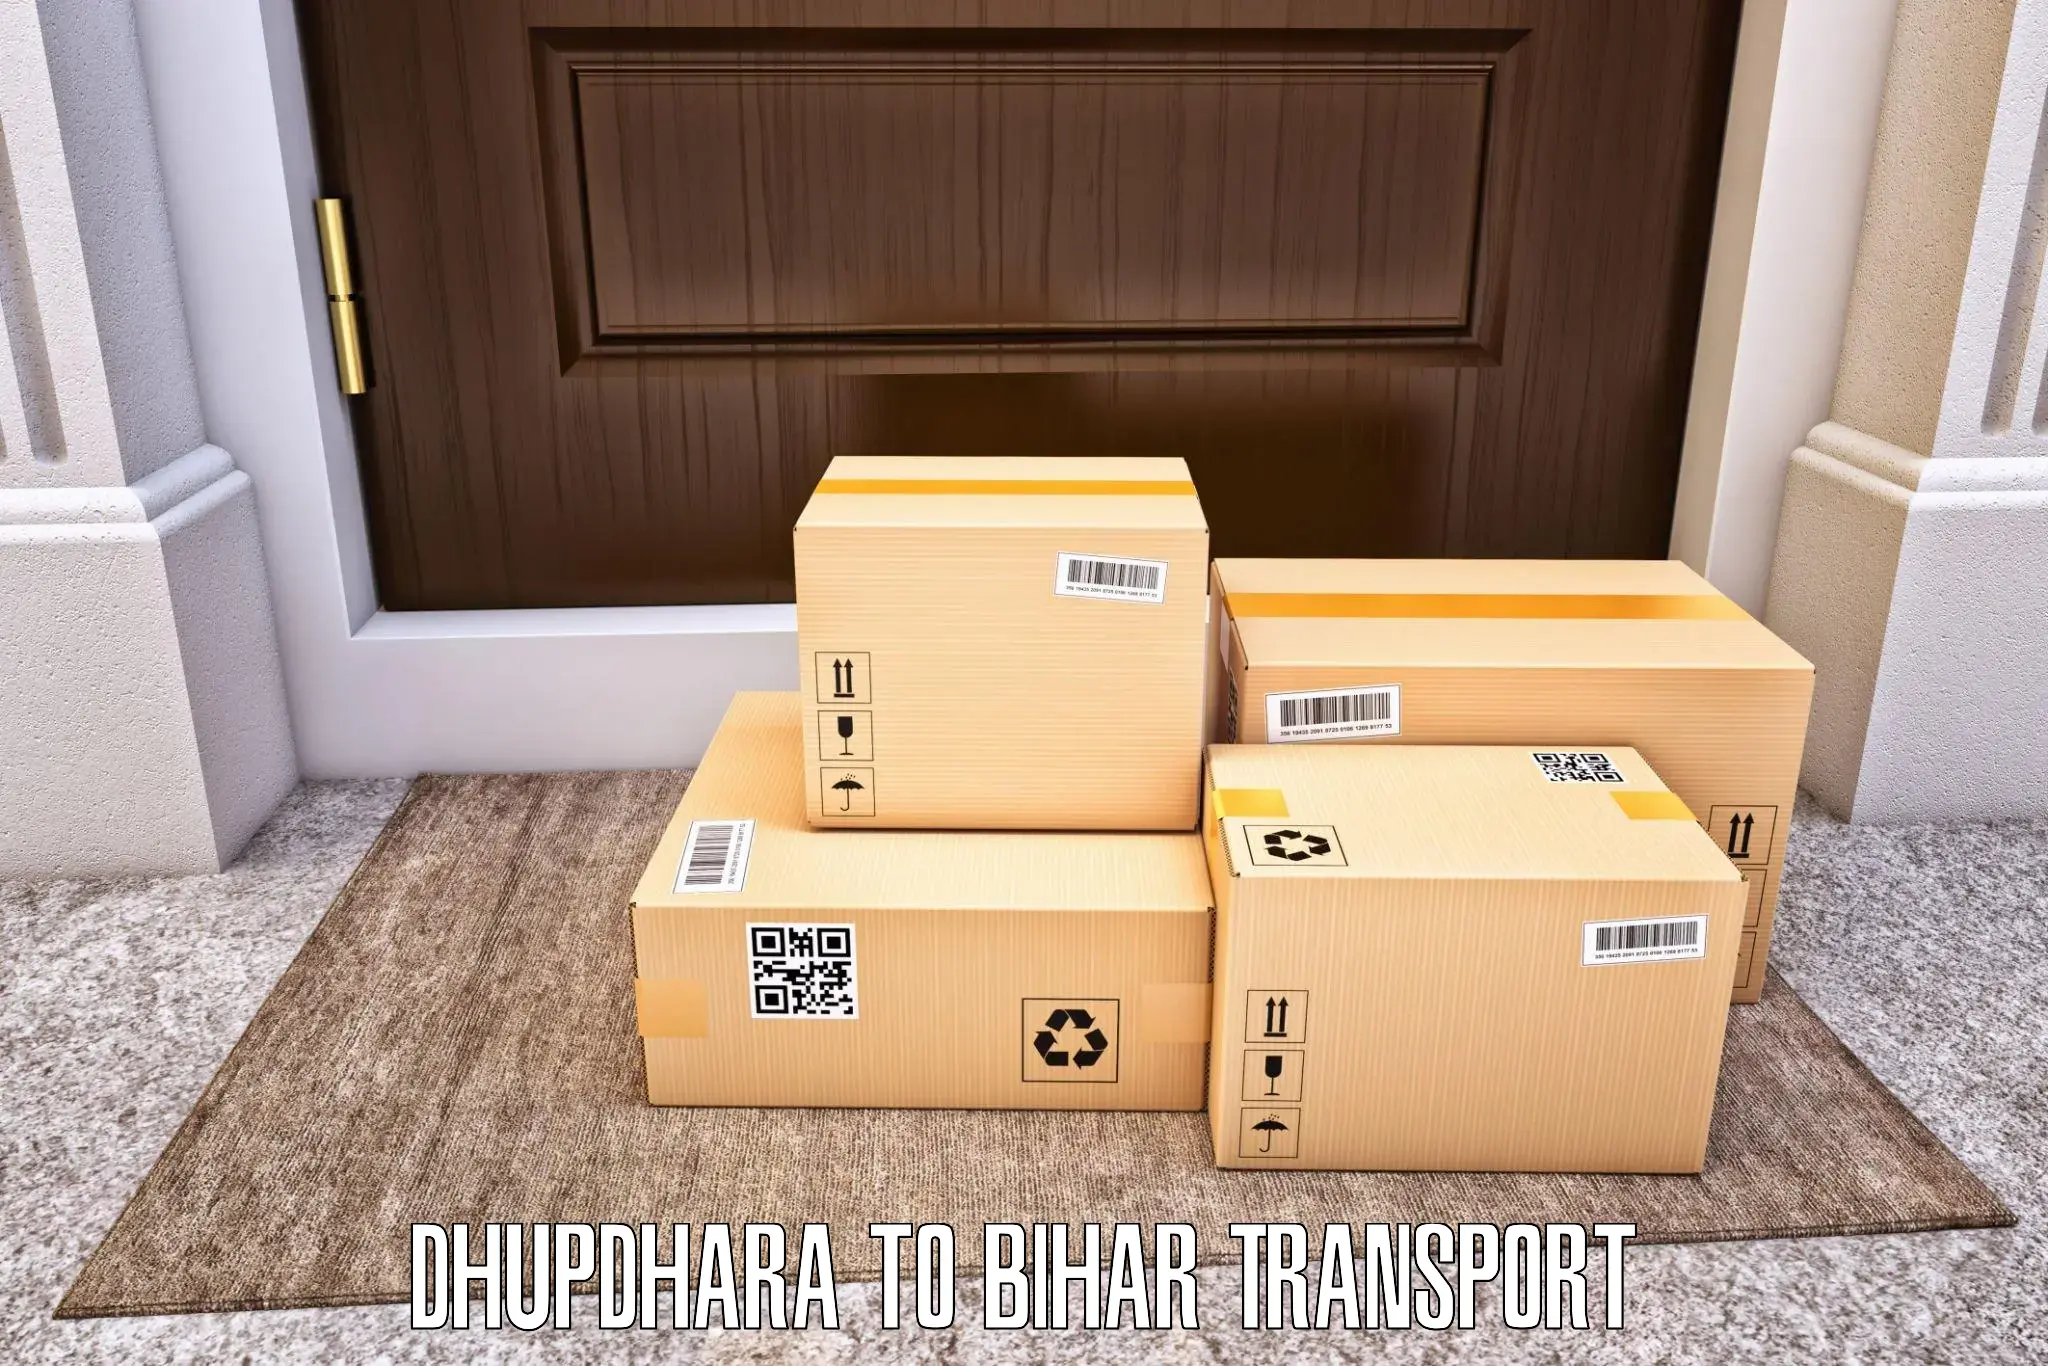 Pick up transport service Dhupdhara to Jiwdhara